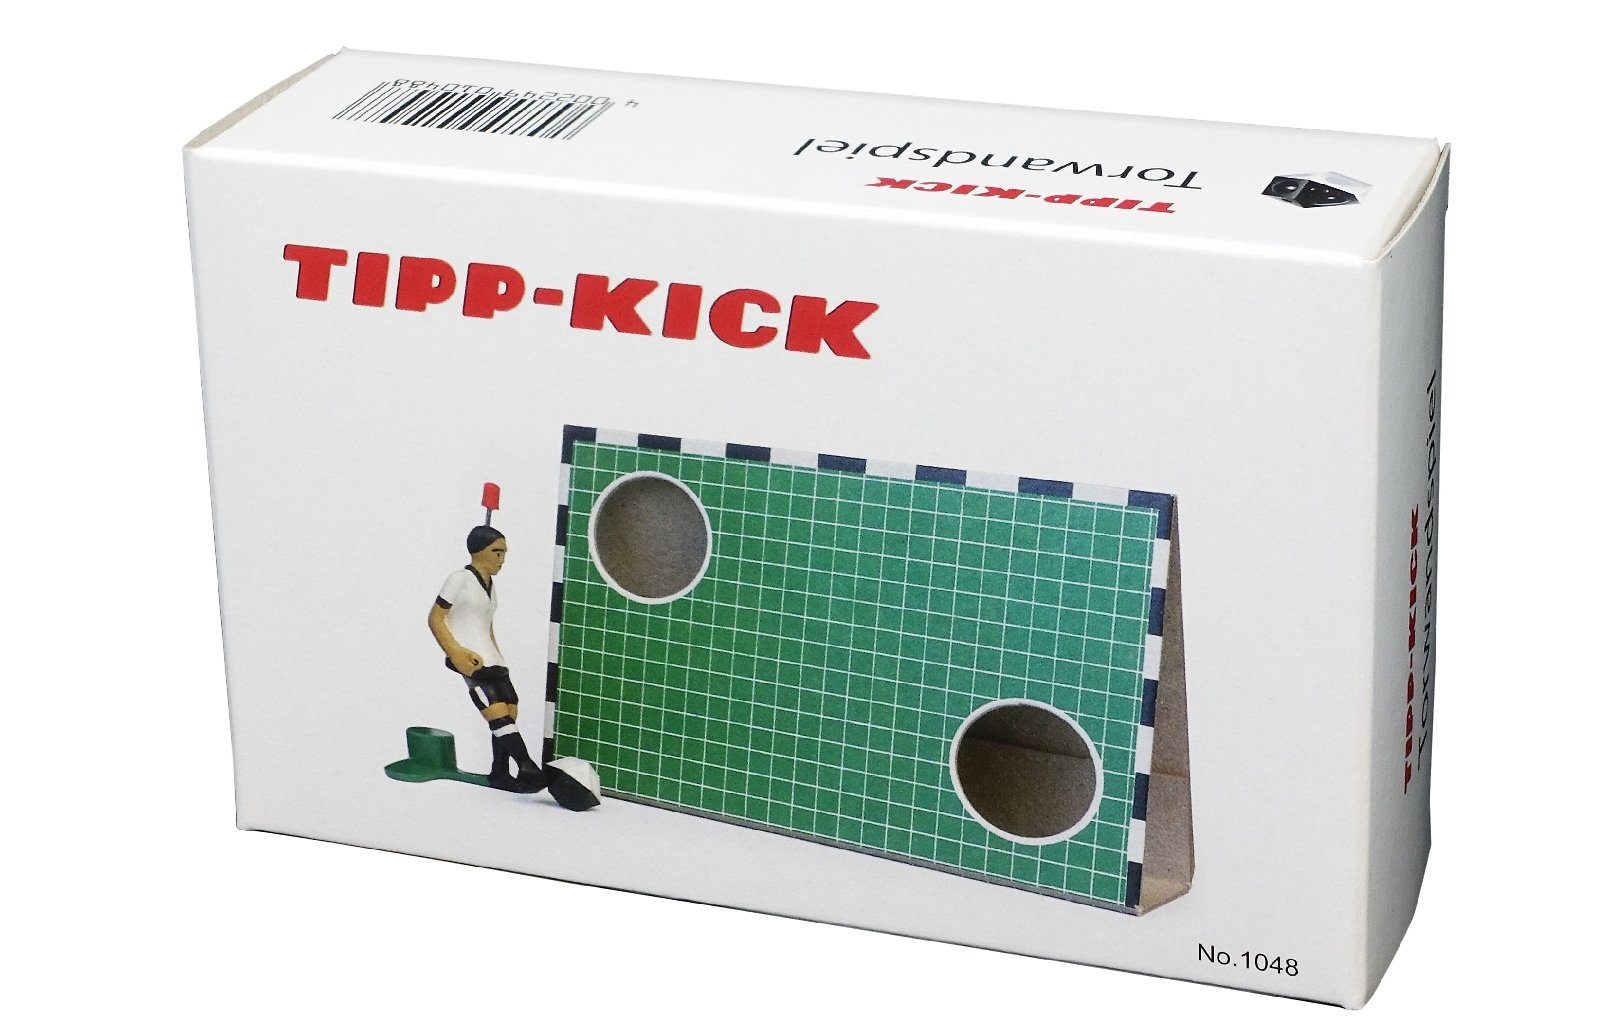 Spieler Tip Deutschland Torwandspiel Kicker Kick Set Ball Tipp-Kick Torwand Tischfußballspiel